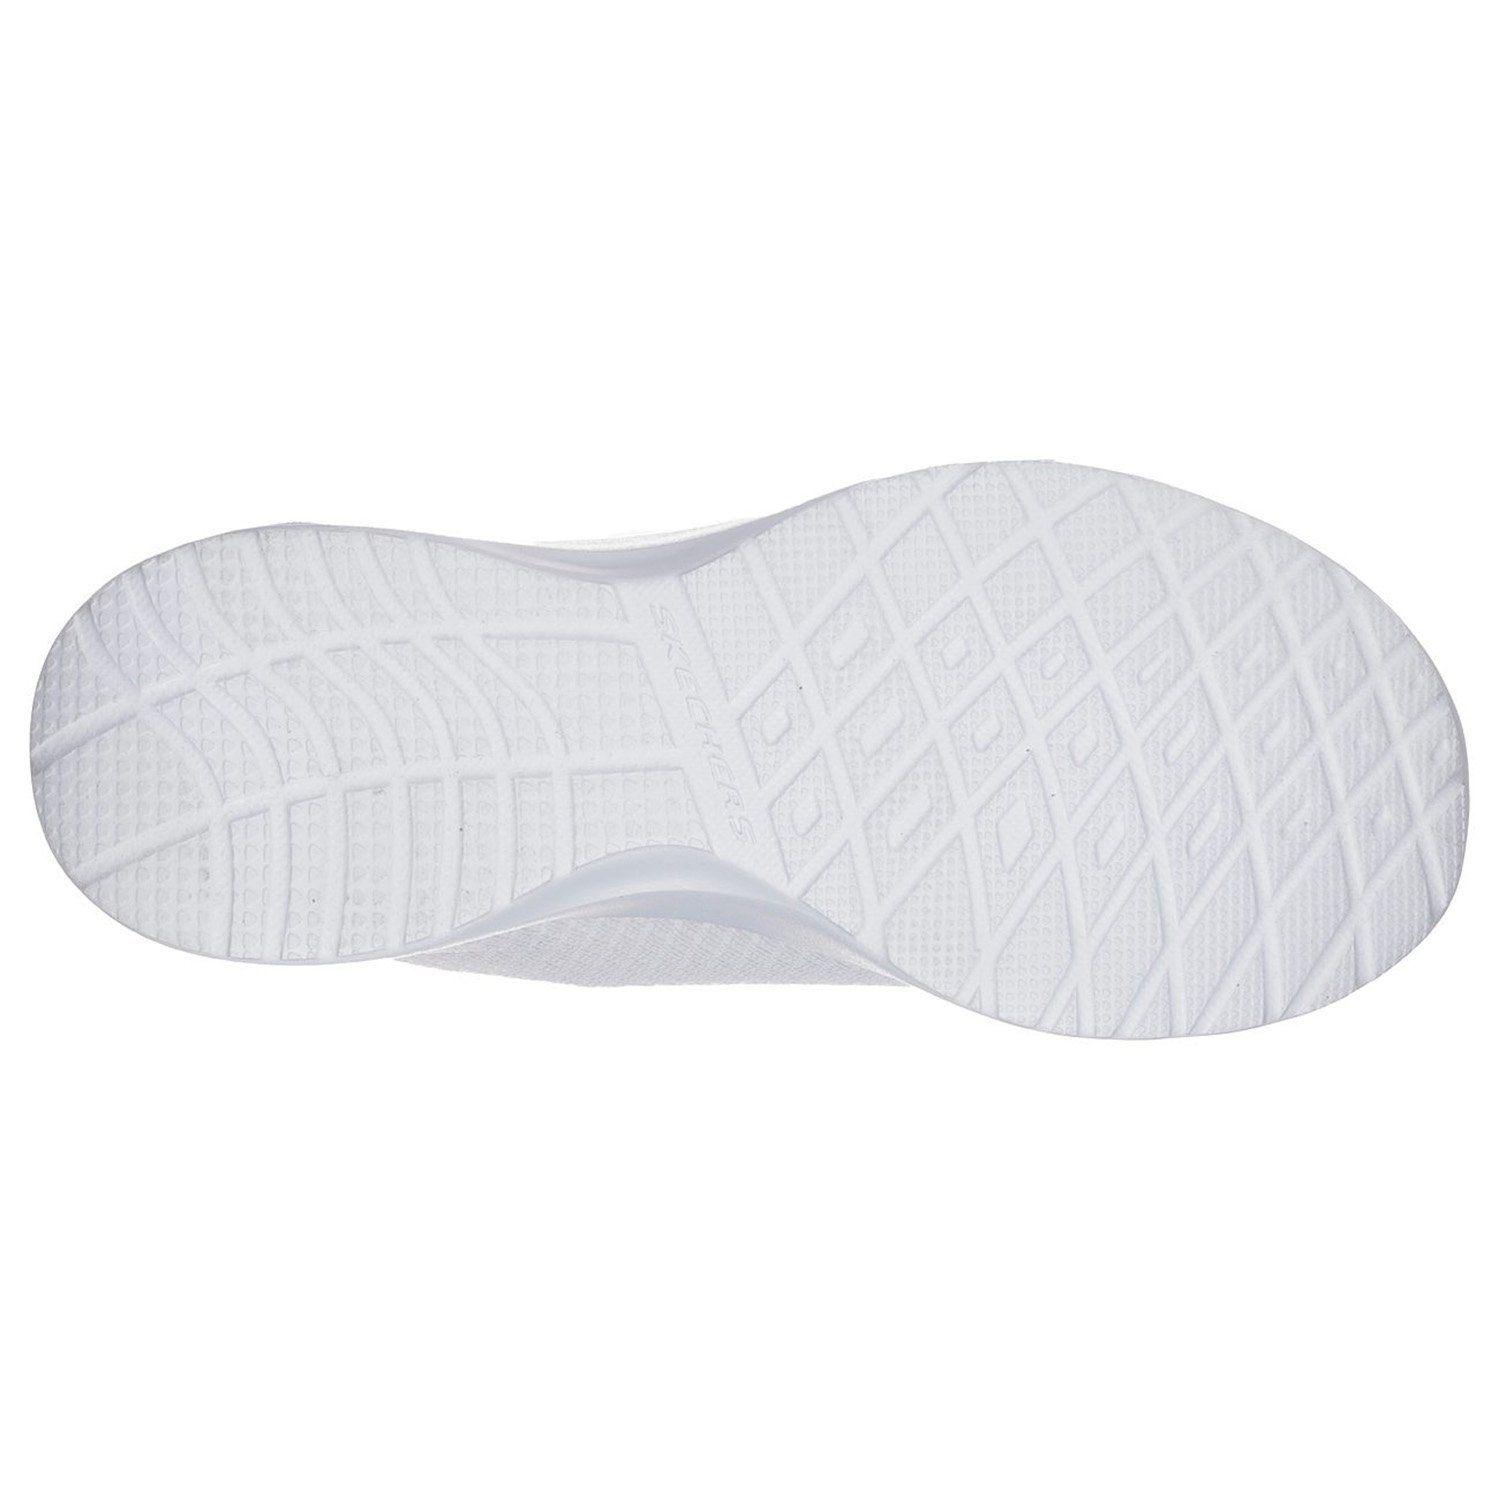 DYNAMIGHT Weiß Skechers (White) (20202334) Sneaker